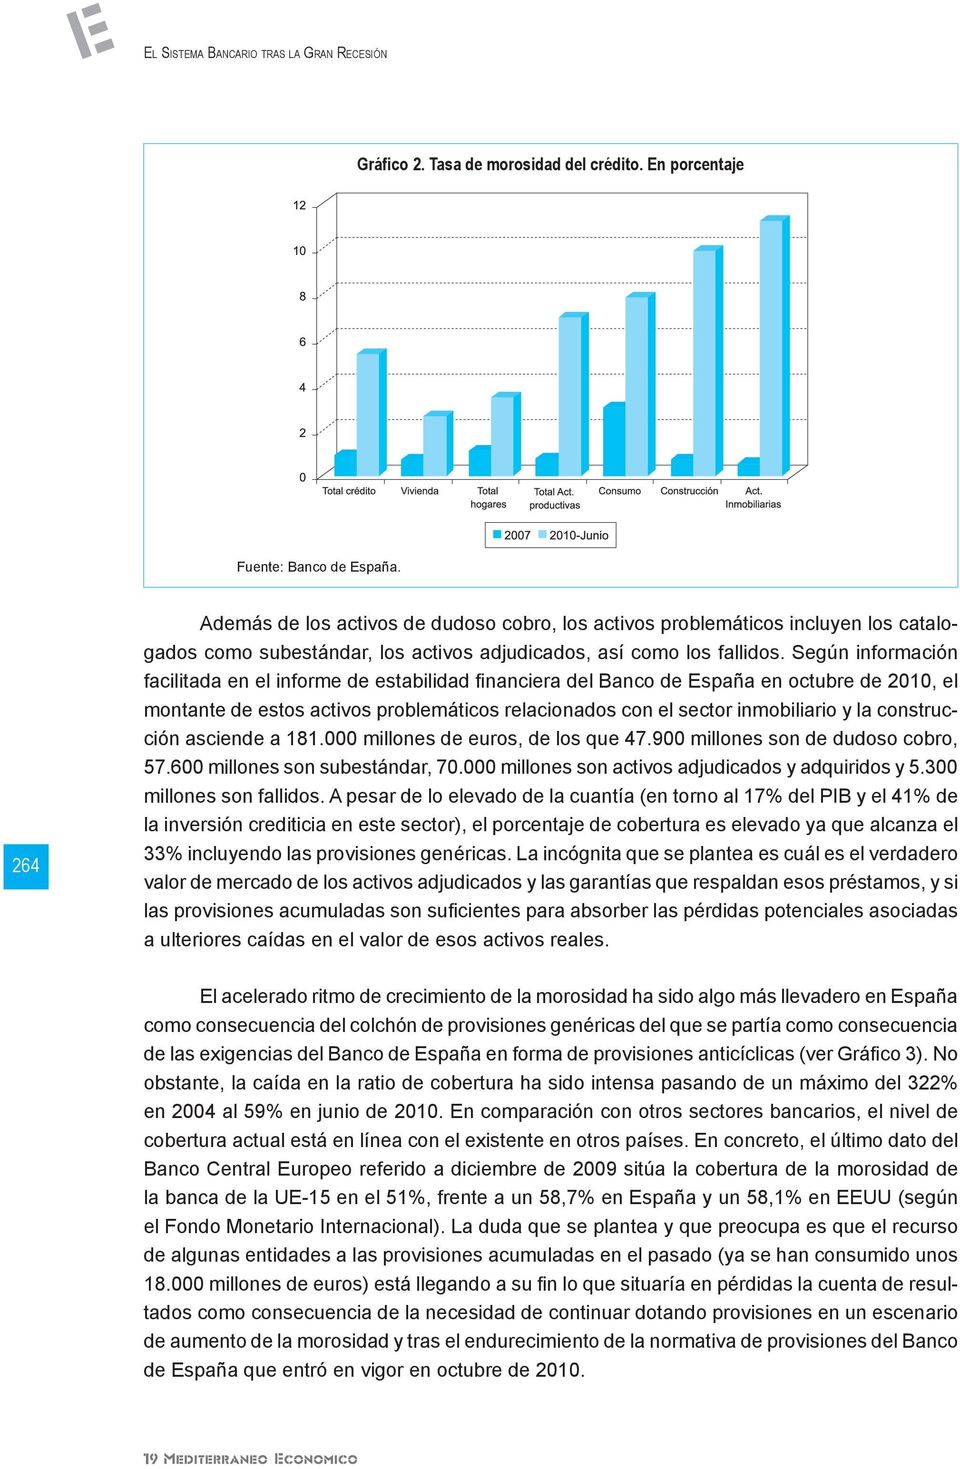 Según información facilitada en el informe de estabilidad financiera del Banco de España en octubre de 2010, el montante de estos activos problemáticos relacionados con el sector inmobiliario y la